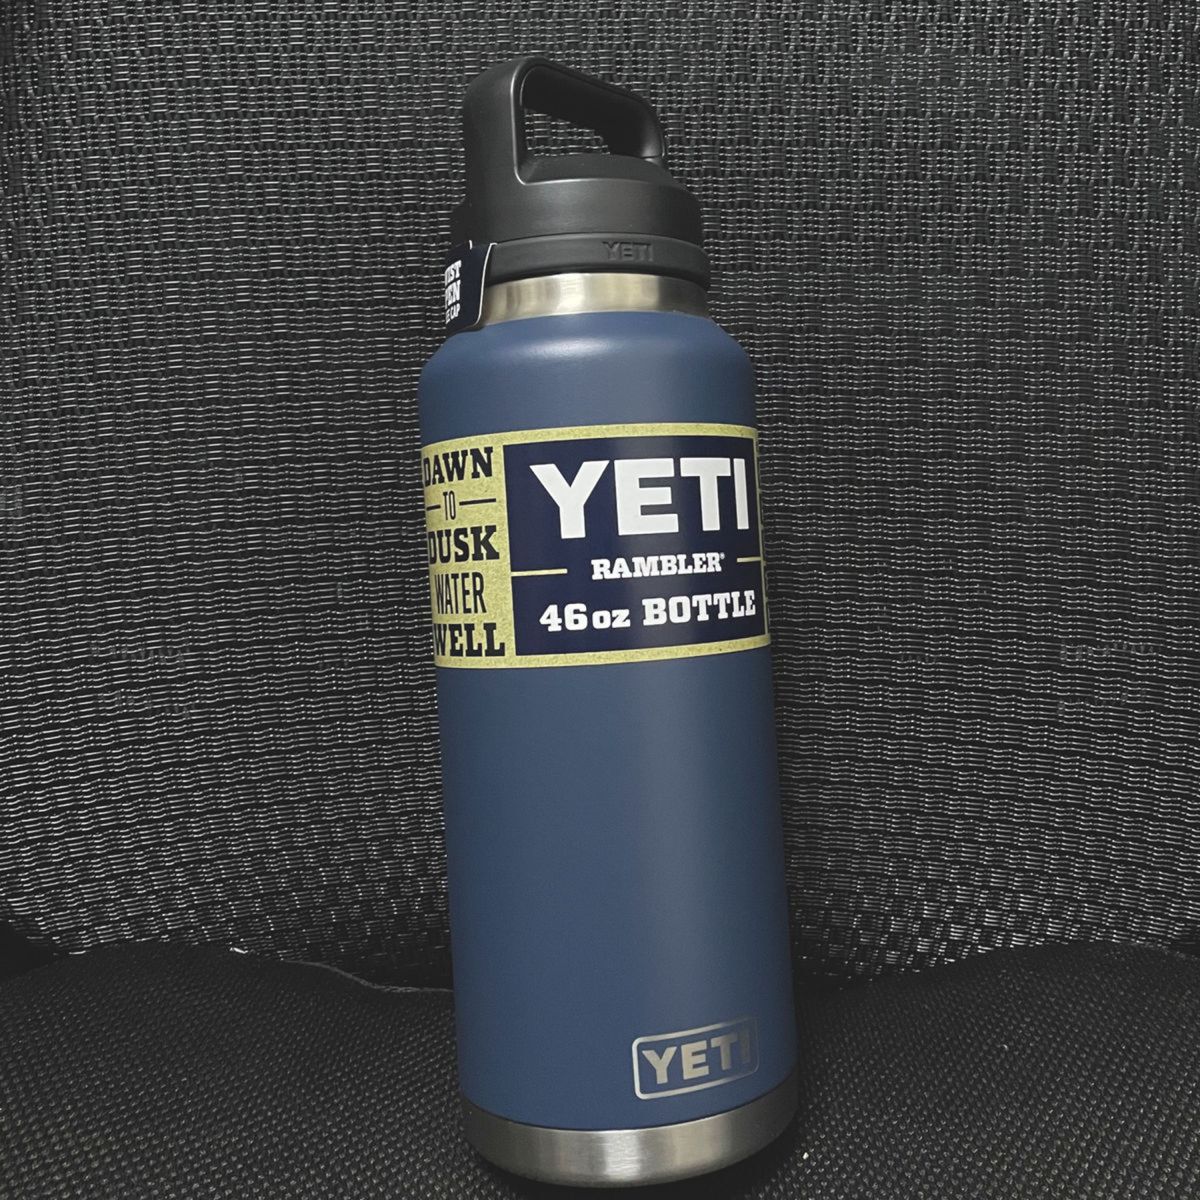 YETI ランブラー 46oz ボトル ネイビー 新品未使用品